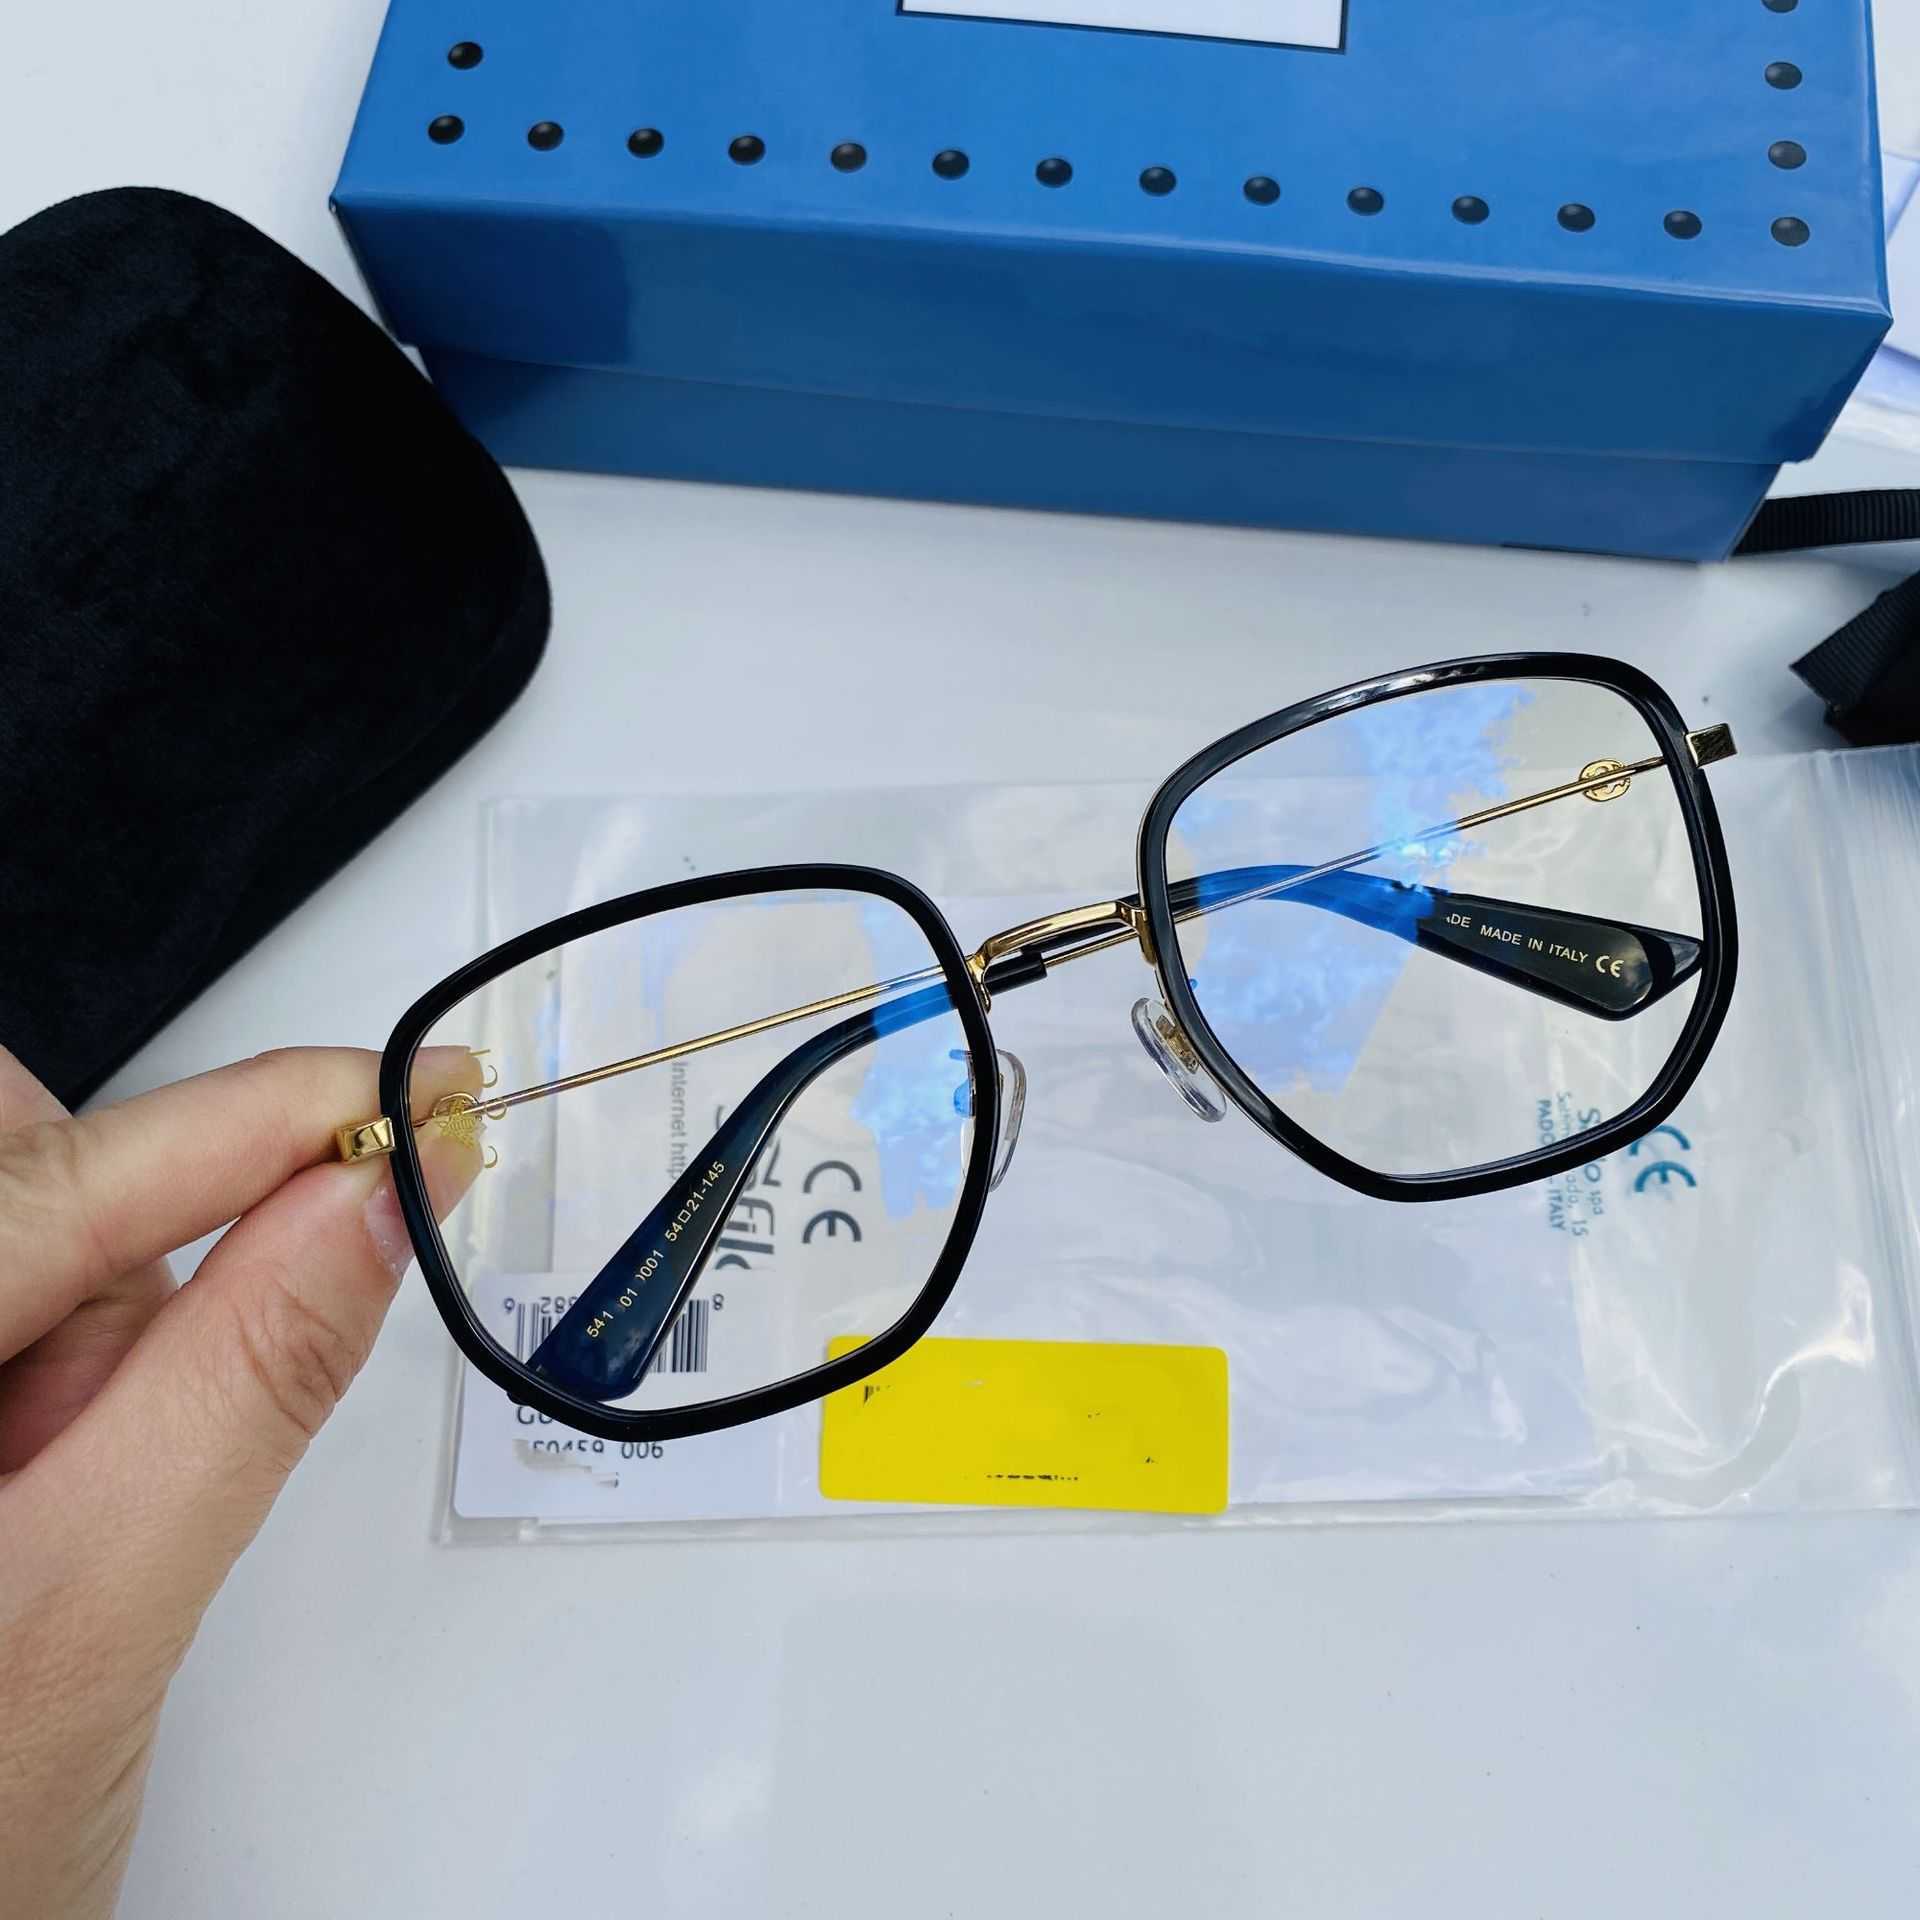 2023 Nieuwe luxe designer zonnebril nieuwe gg0459 platte lens heeft een onregelmatig montuur en is populair. Het effen gezicht kan worden gecombineerd met een bijziend bijtje